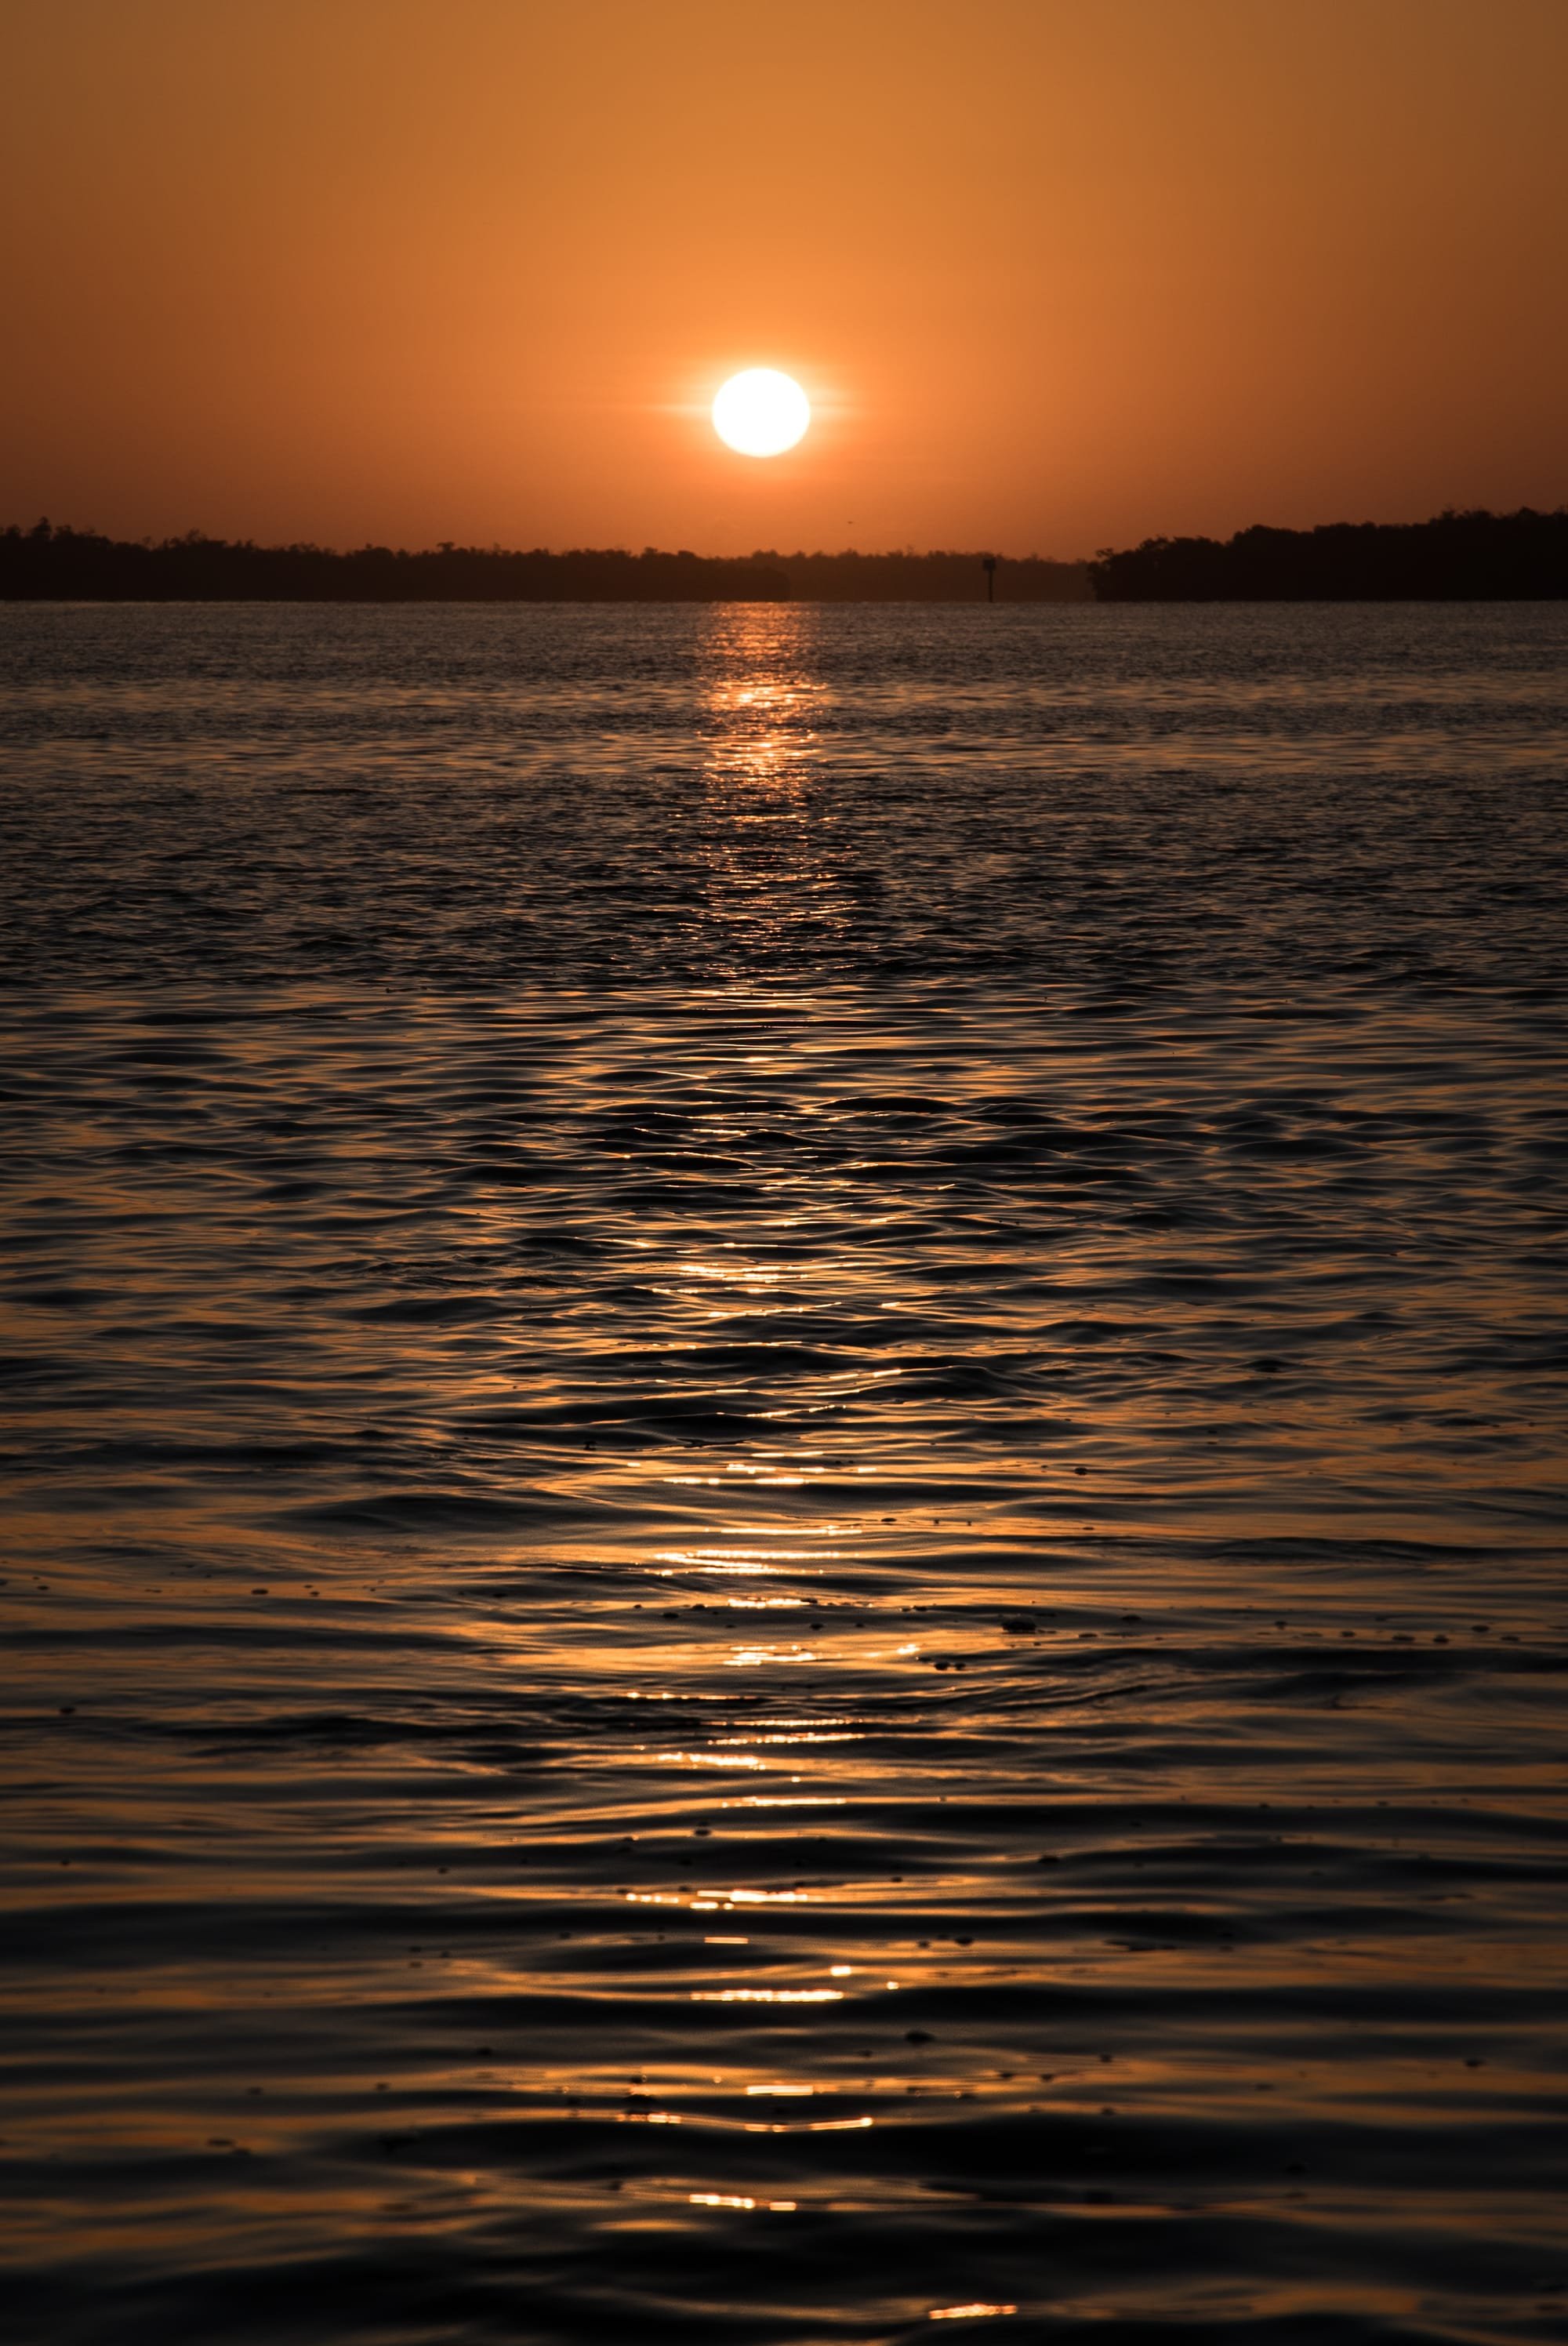 SUNRISE OVER QUIET OCEAN IN MARCO ISLAND, FL